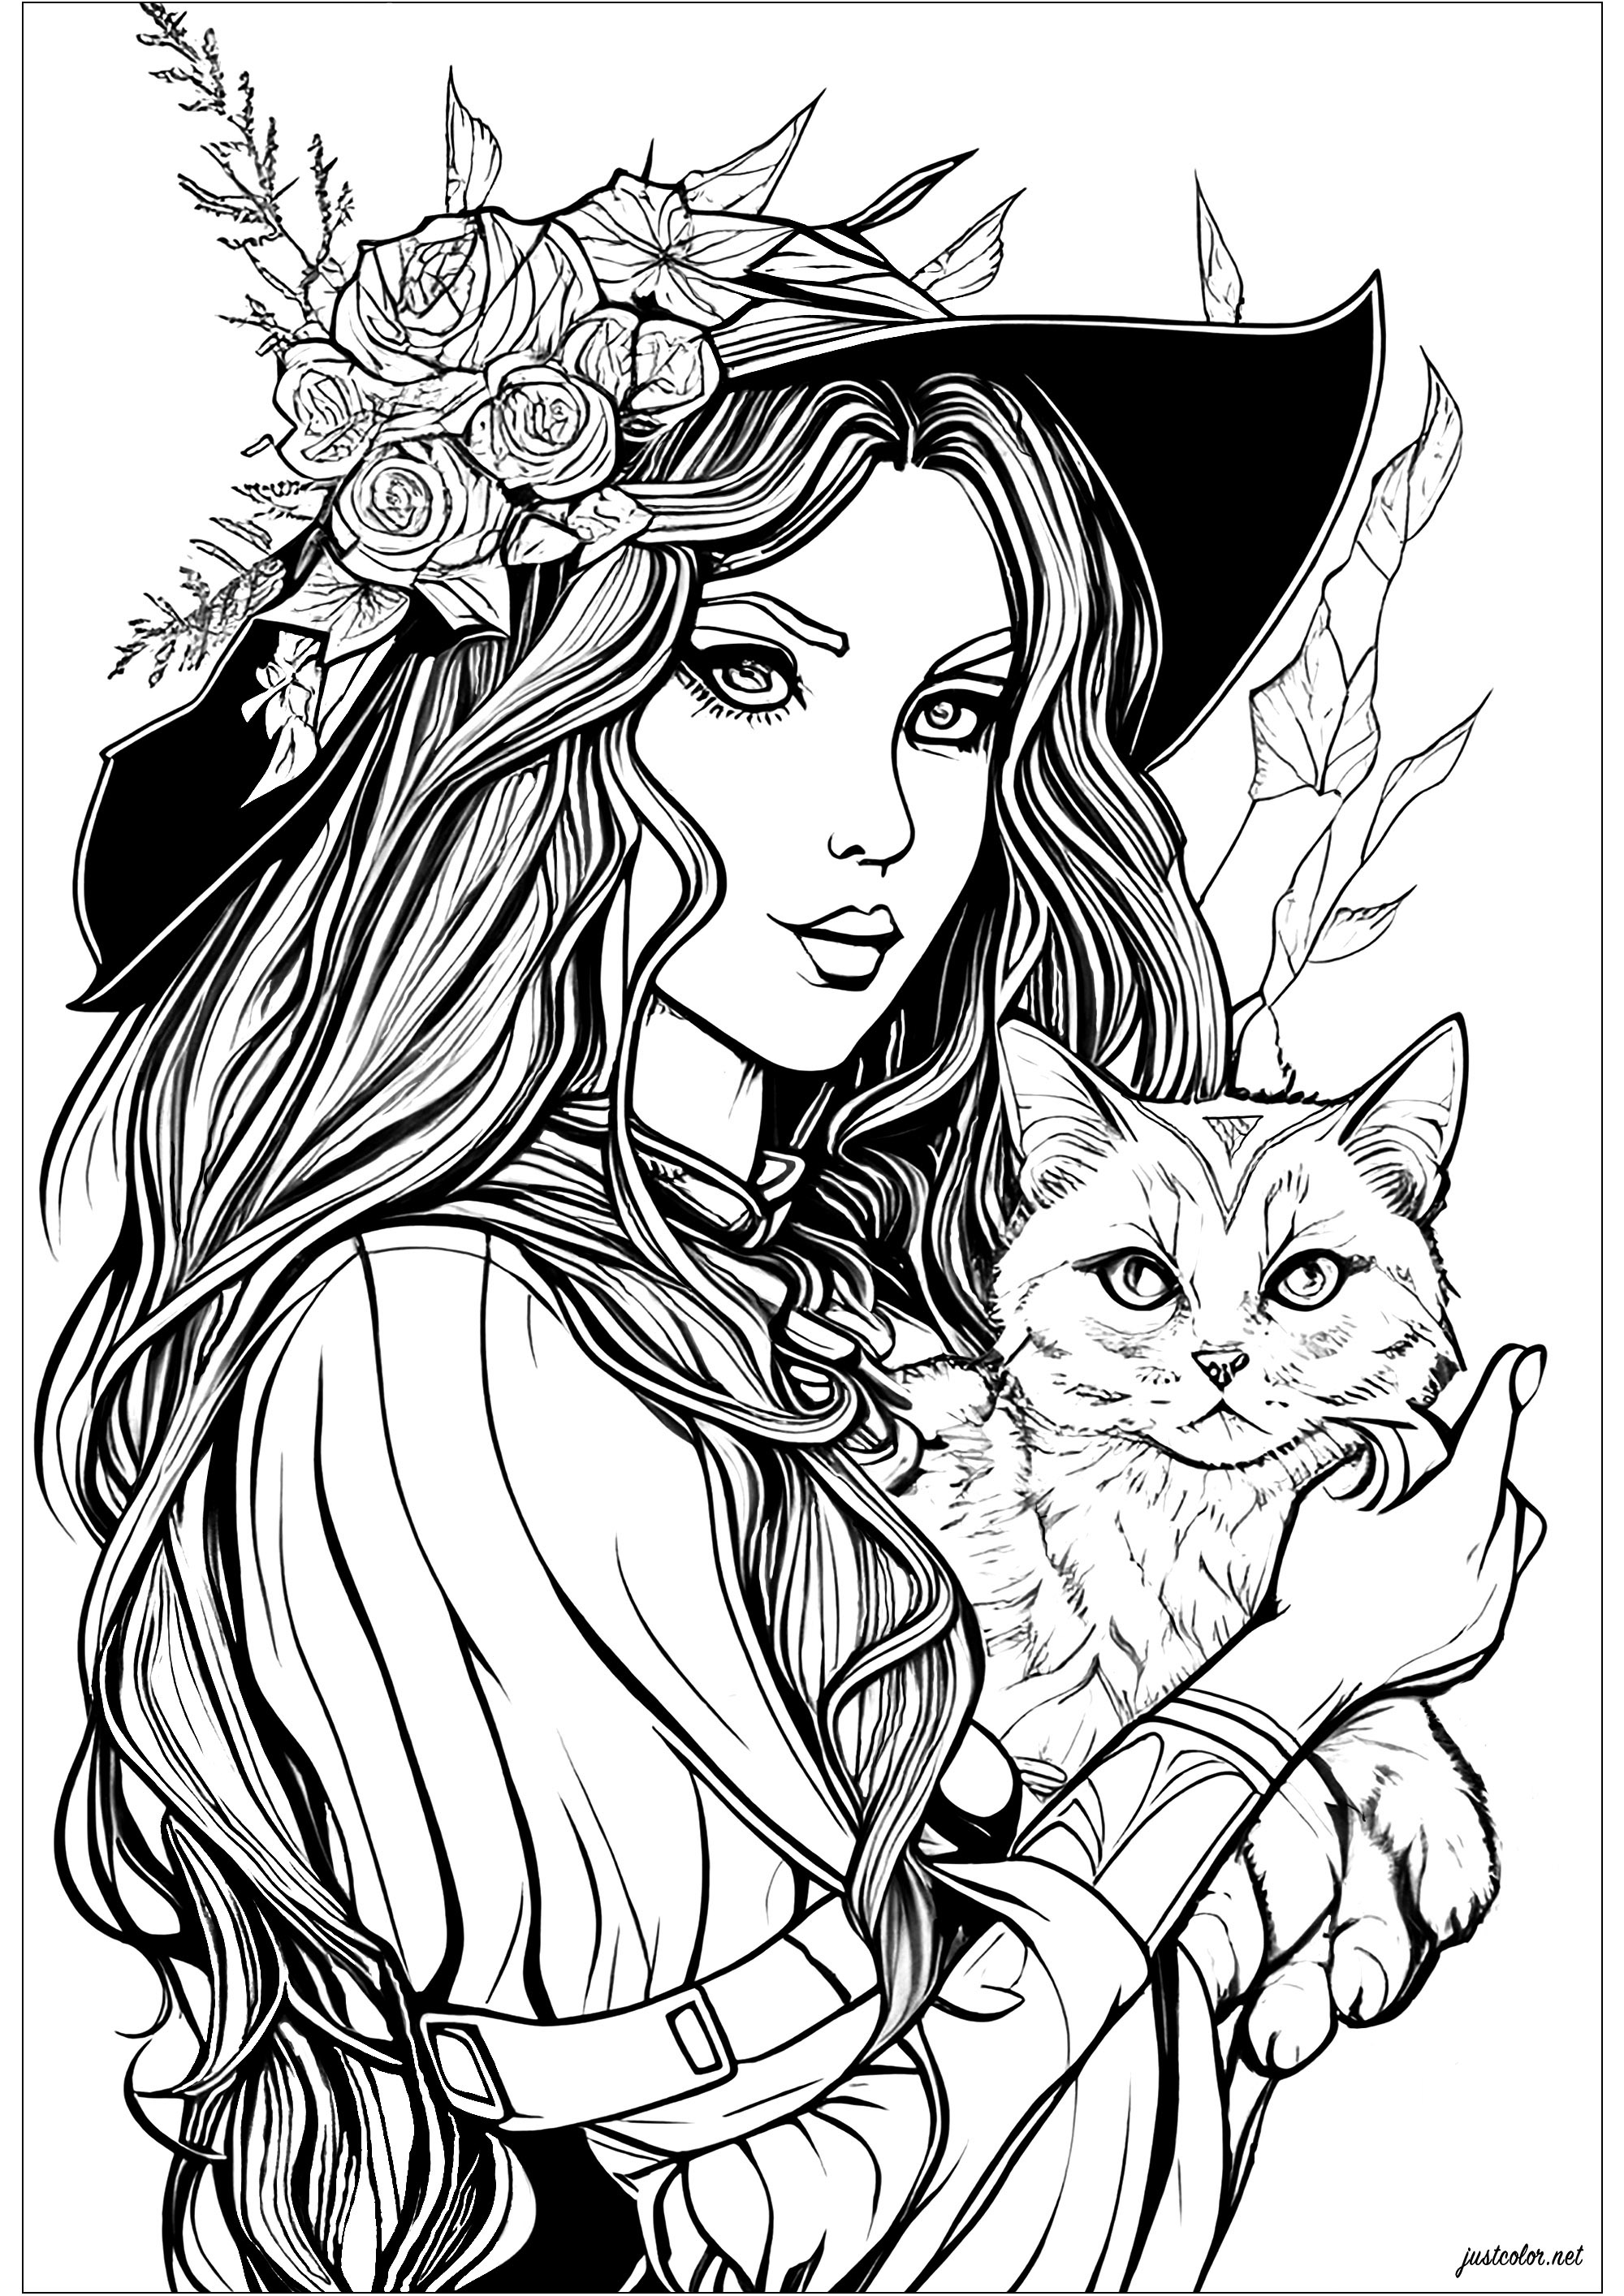 Página para colorir de uma bruxa com um olhar encantador e o seu gato travesso. Um desenho para colorir maléfico, com muitos pormenores e com temas muito realistas.